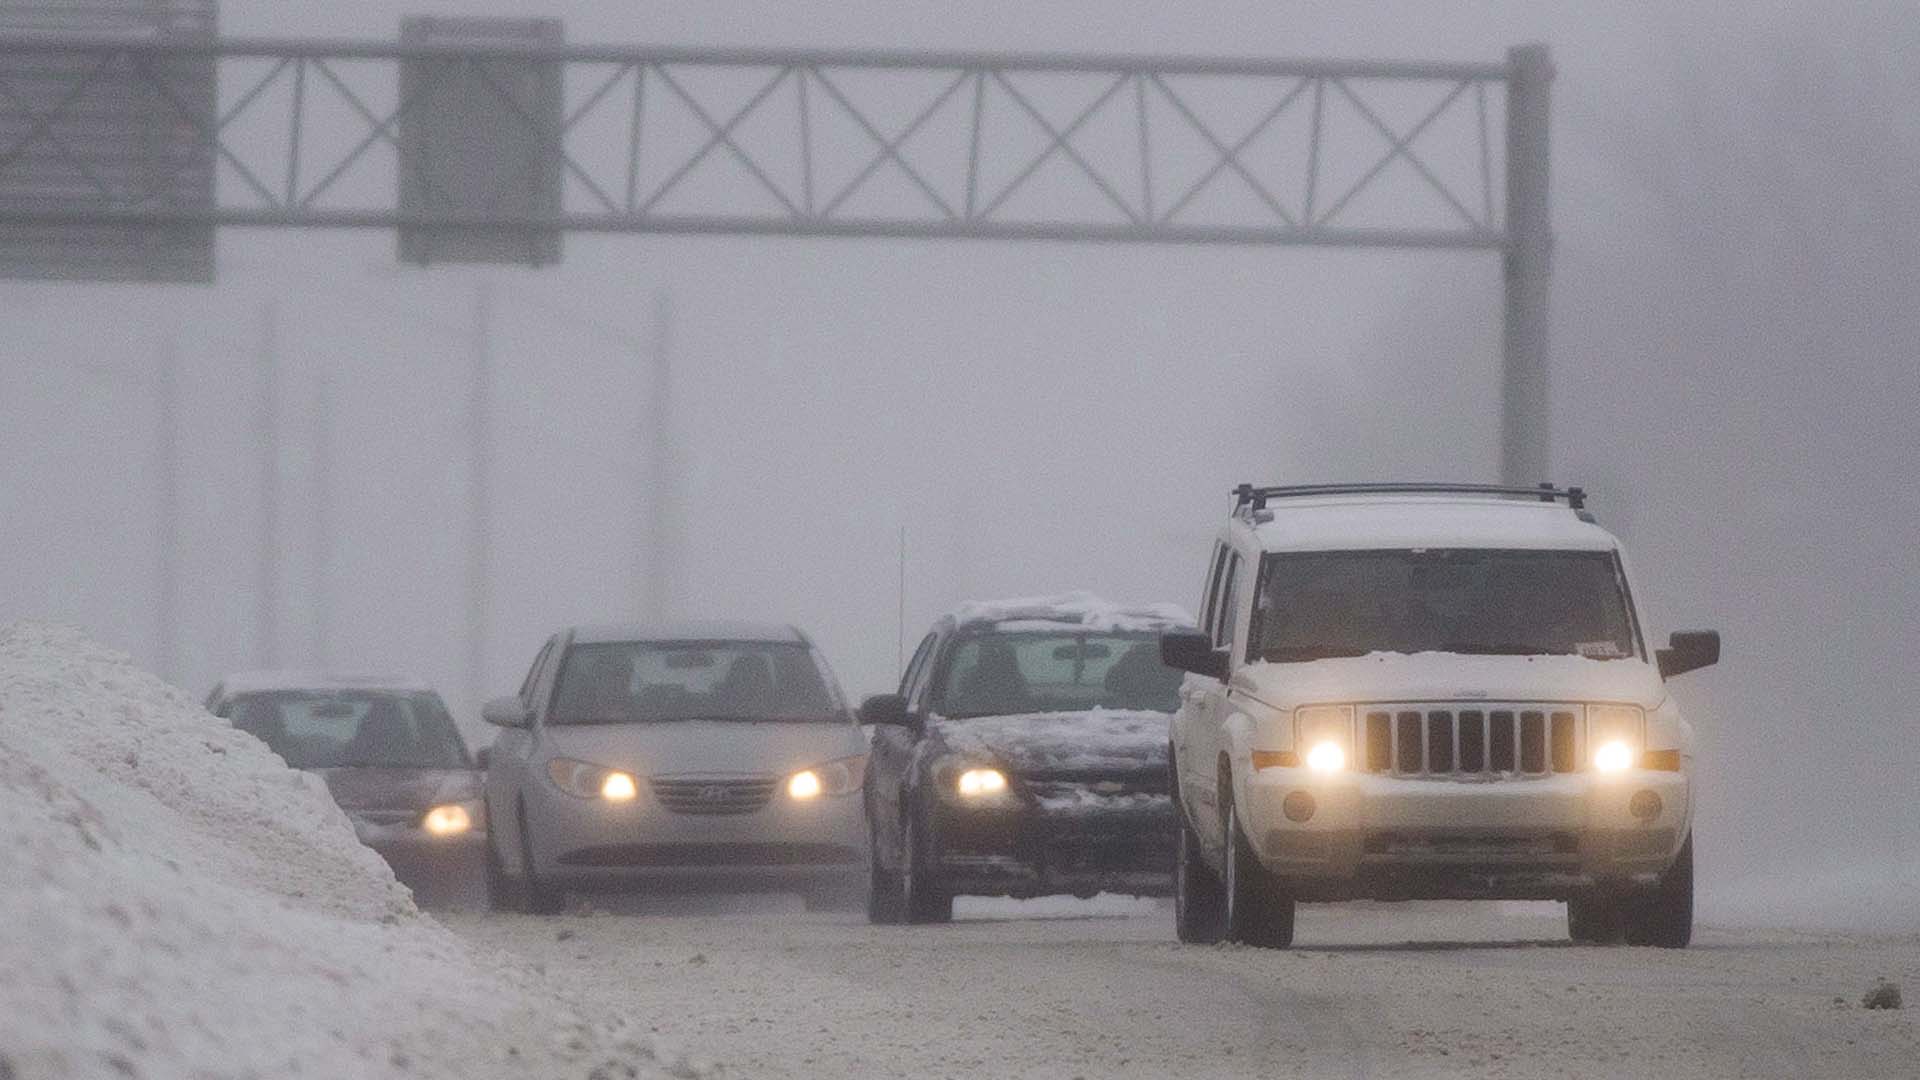 Des automobilistes circulent sur l'autoroute 40 lors d'une tempête hivernale à Montréal le 22 décembre 2013. LA PRESSE CANADIENNE/Graham Hughes